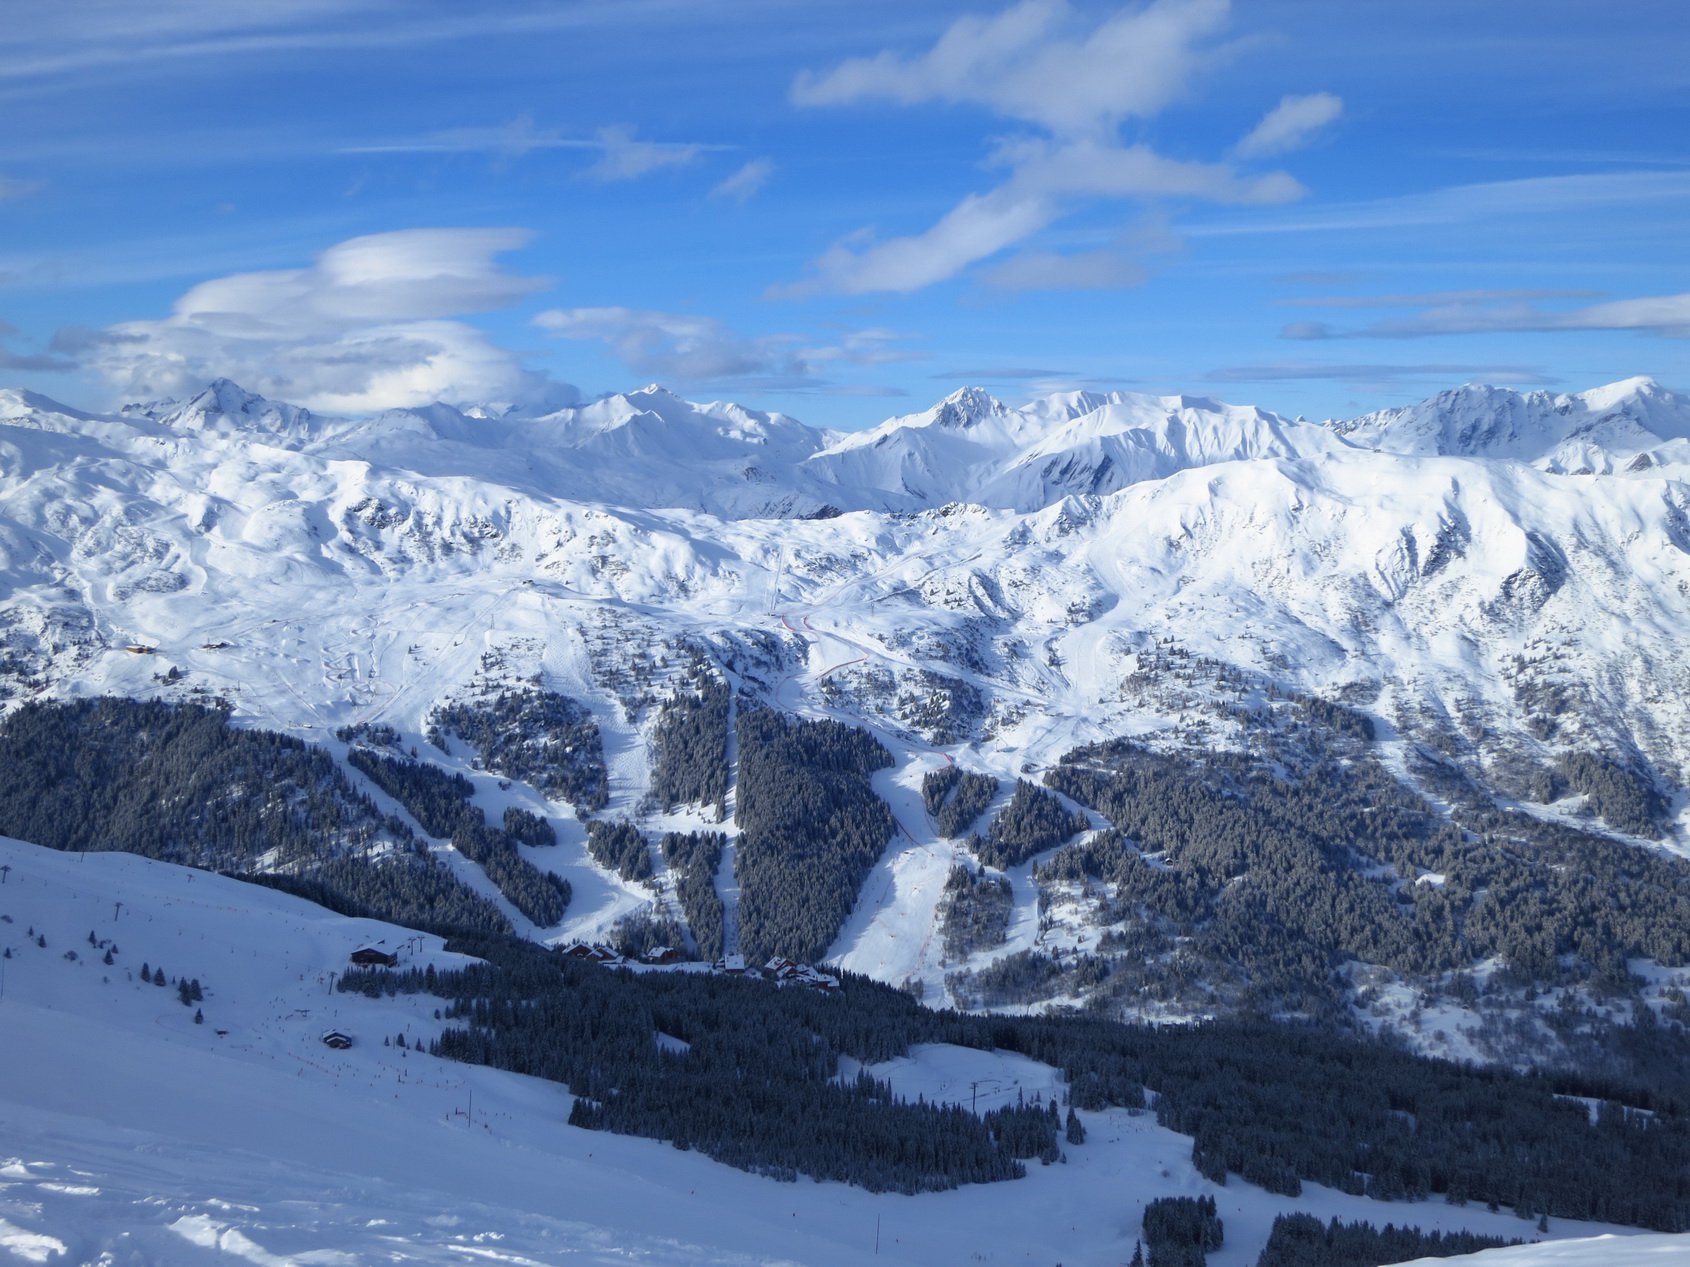 View of La Tania Ski Resort in the French Alps taken in February 2014.